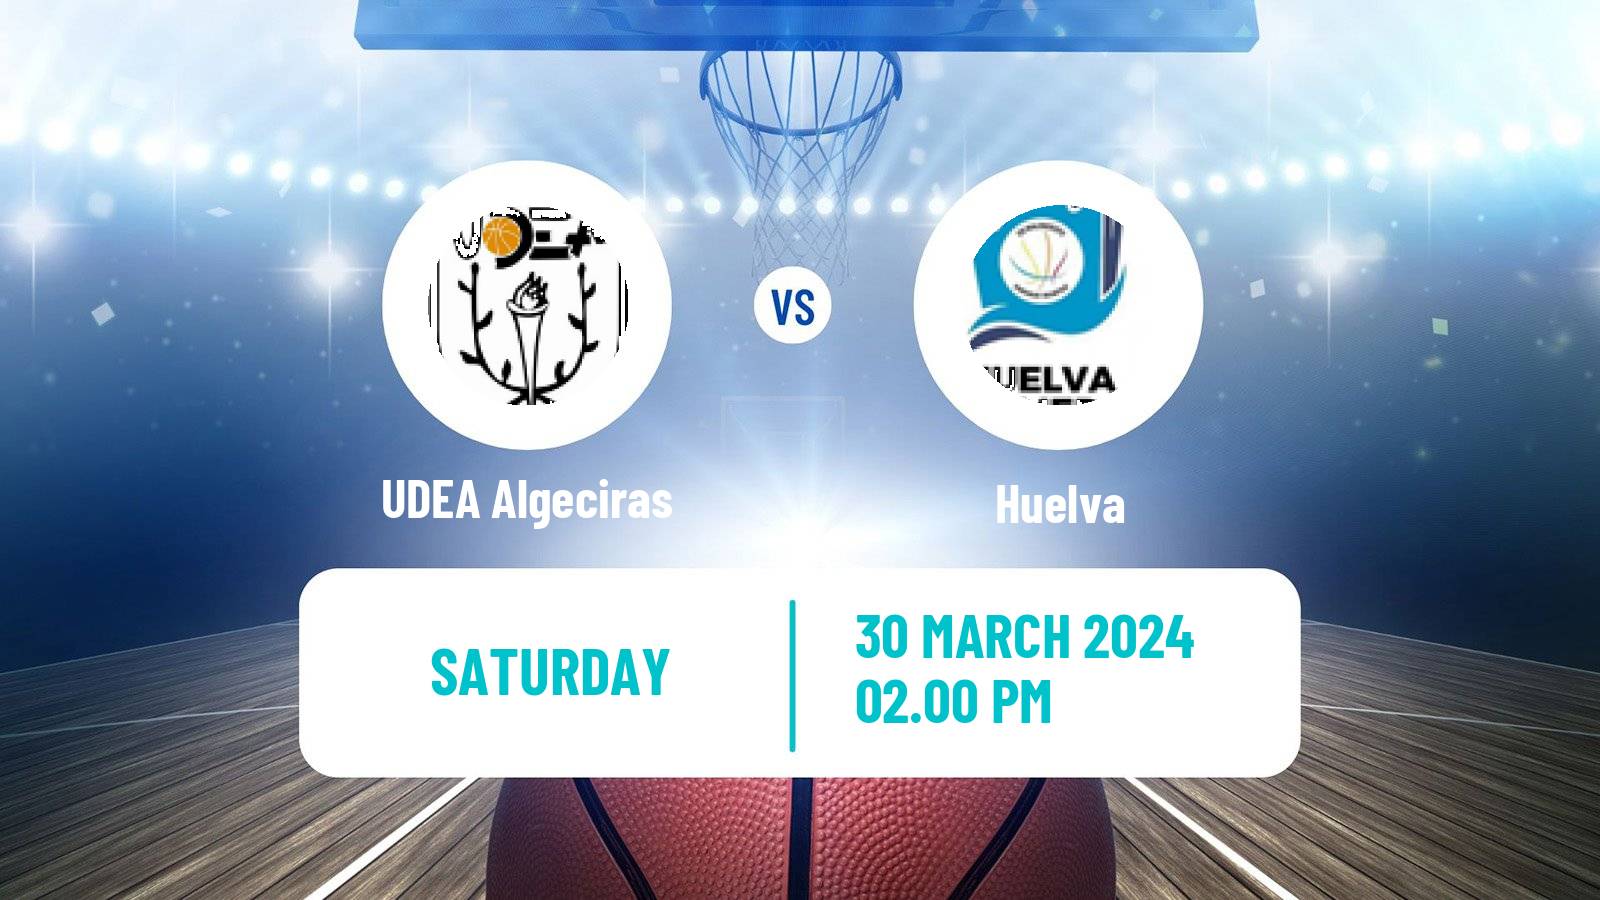 Basketball Spanish LEB Plata UDEA Algeciras - Huelva